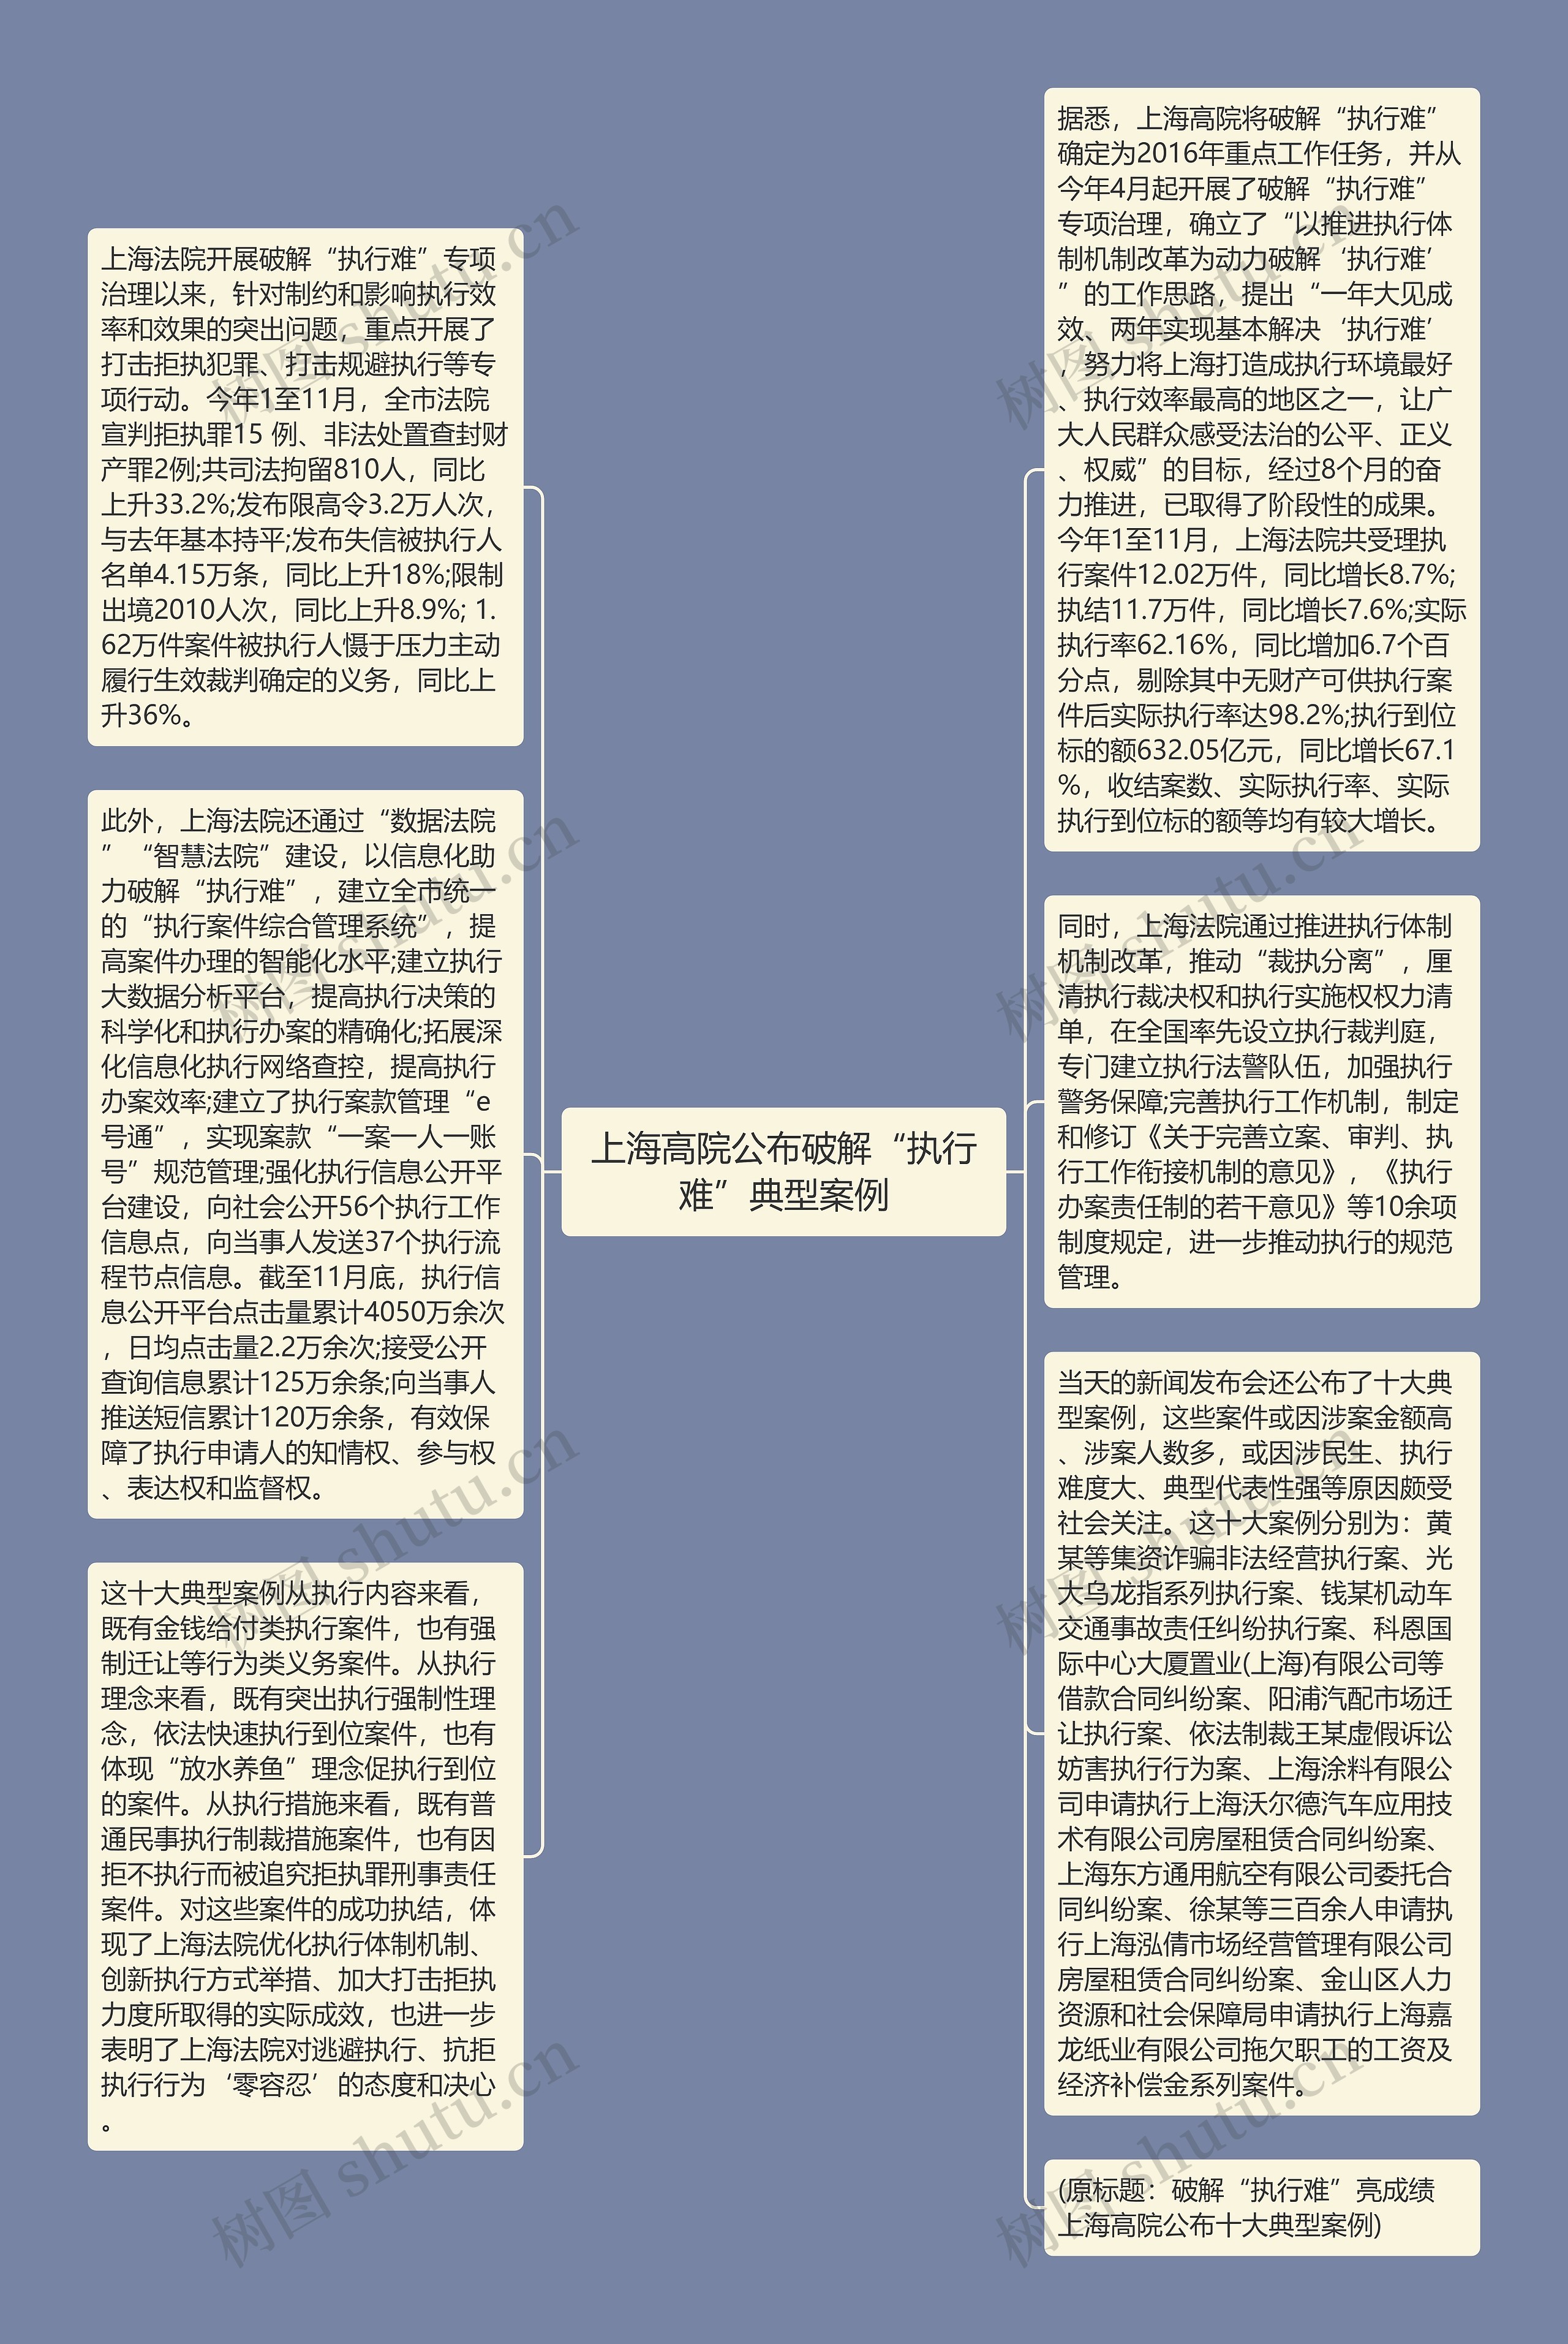 上海高院公布破解“执行难”典型案例